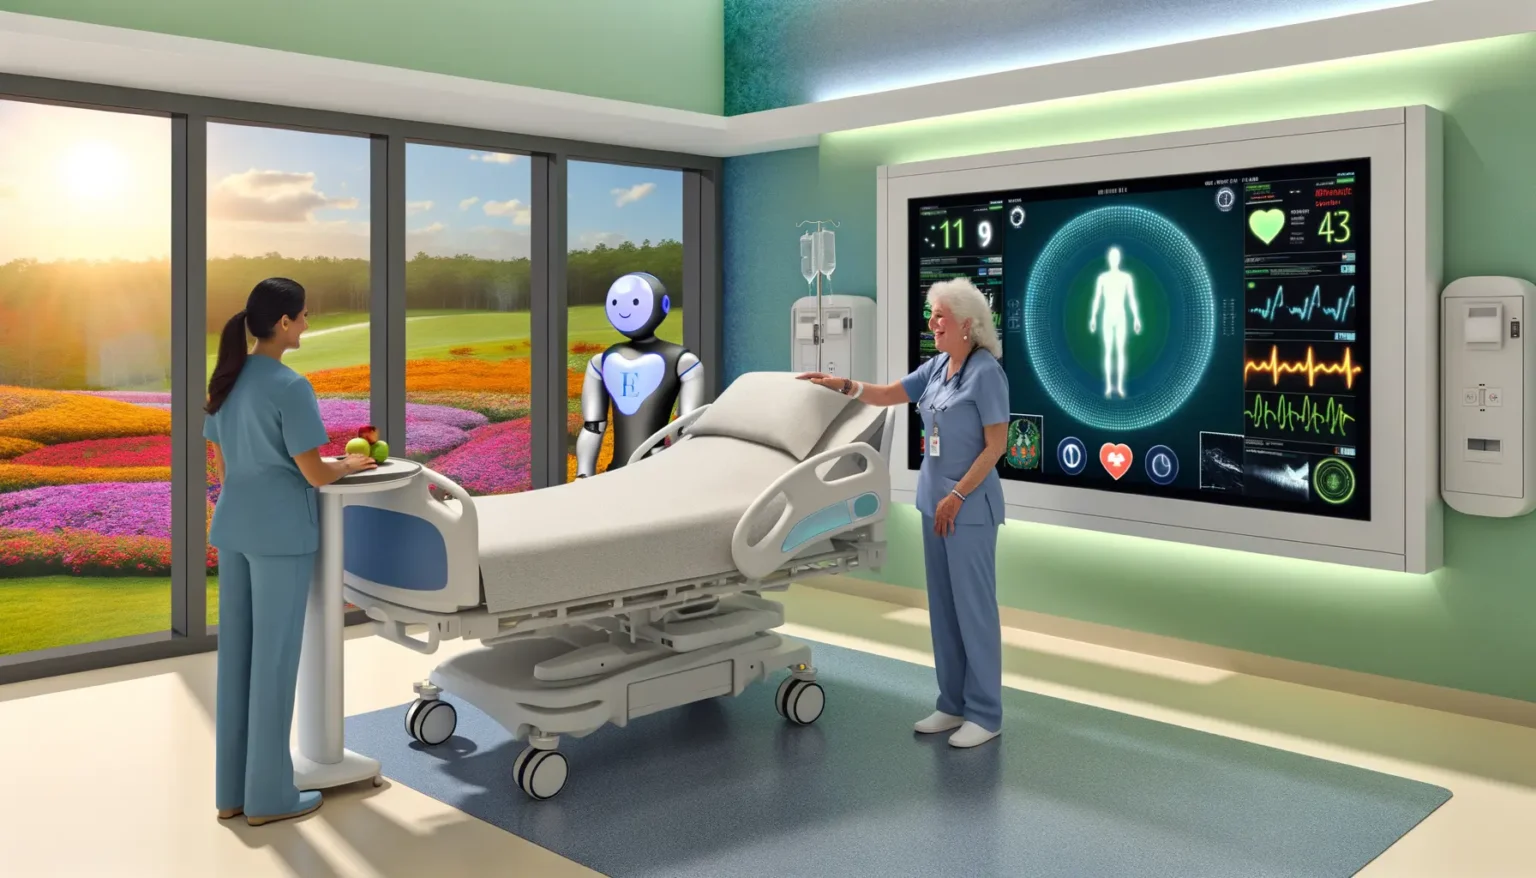 Eine futuristische Krankenhauszimmerszene mit einer Frau in medizinischer Berufskleidung, die einem menschenähnlichen Roboter etwas am Krankenhausbett erklärt. Links im Bild steht eine andere medizinische Fachkraft, die auf ein Tablett mit Obst schaut. Durch das Fenster ist eine idyllische Landschaft mit farbenfrohen Blumenfeldern und Bäumen sichtbar. An der Wand befindet sich ein großes digitales Display, das verschiedene Gesundheitsmetriken anzeigt.